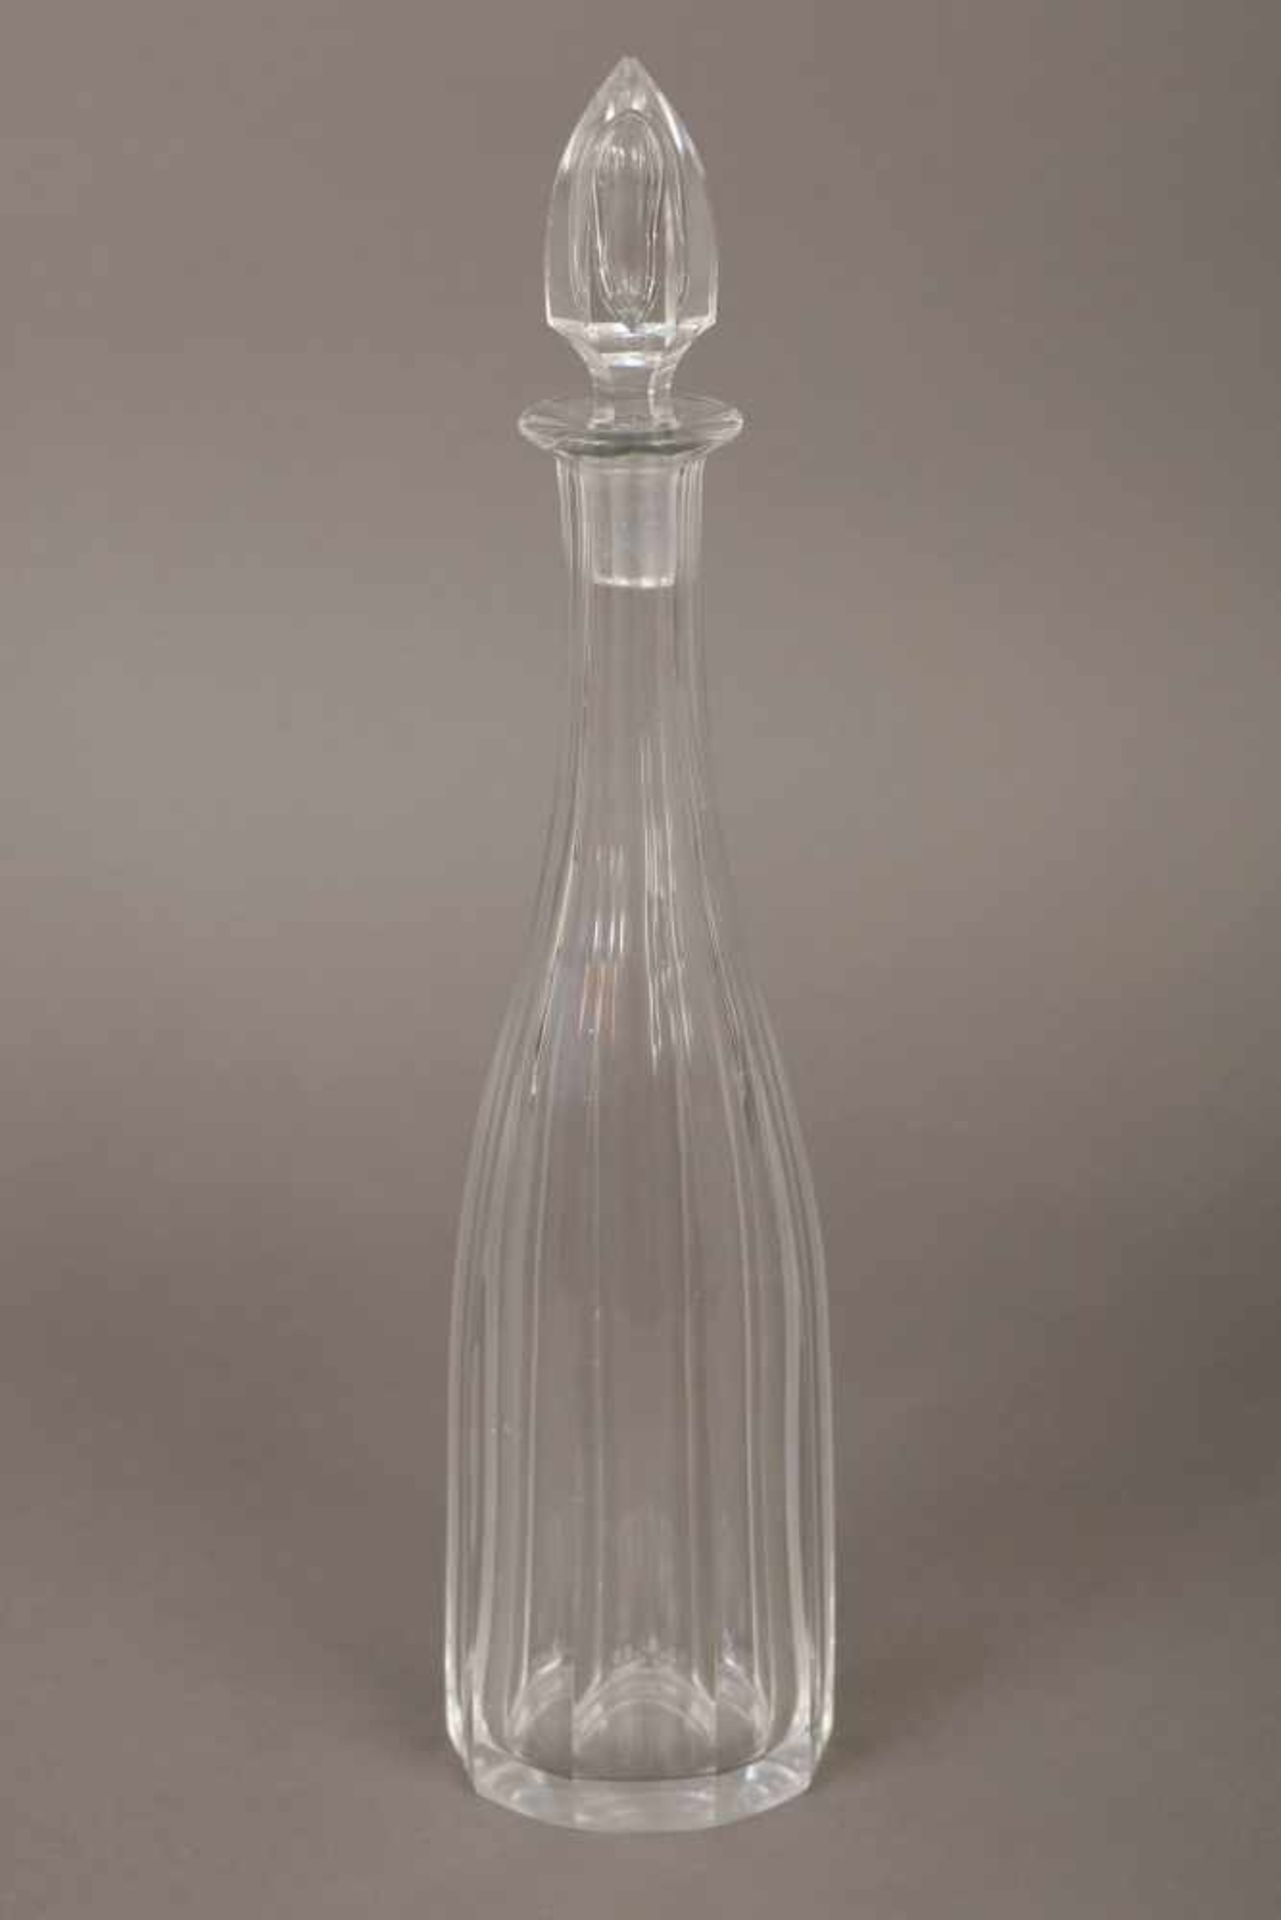 Karaffefarbloses Glas, keulenförmig, facettiert, zapfenförmiger Stopfen, H ca. 40cm, am Stand leicht